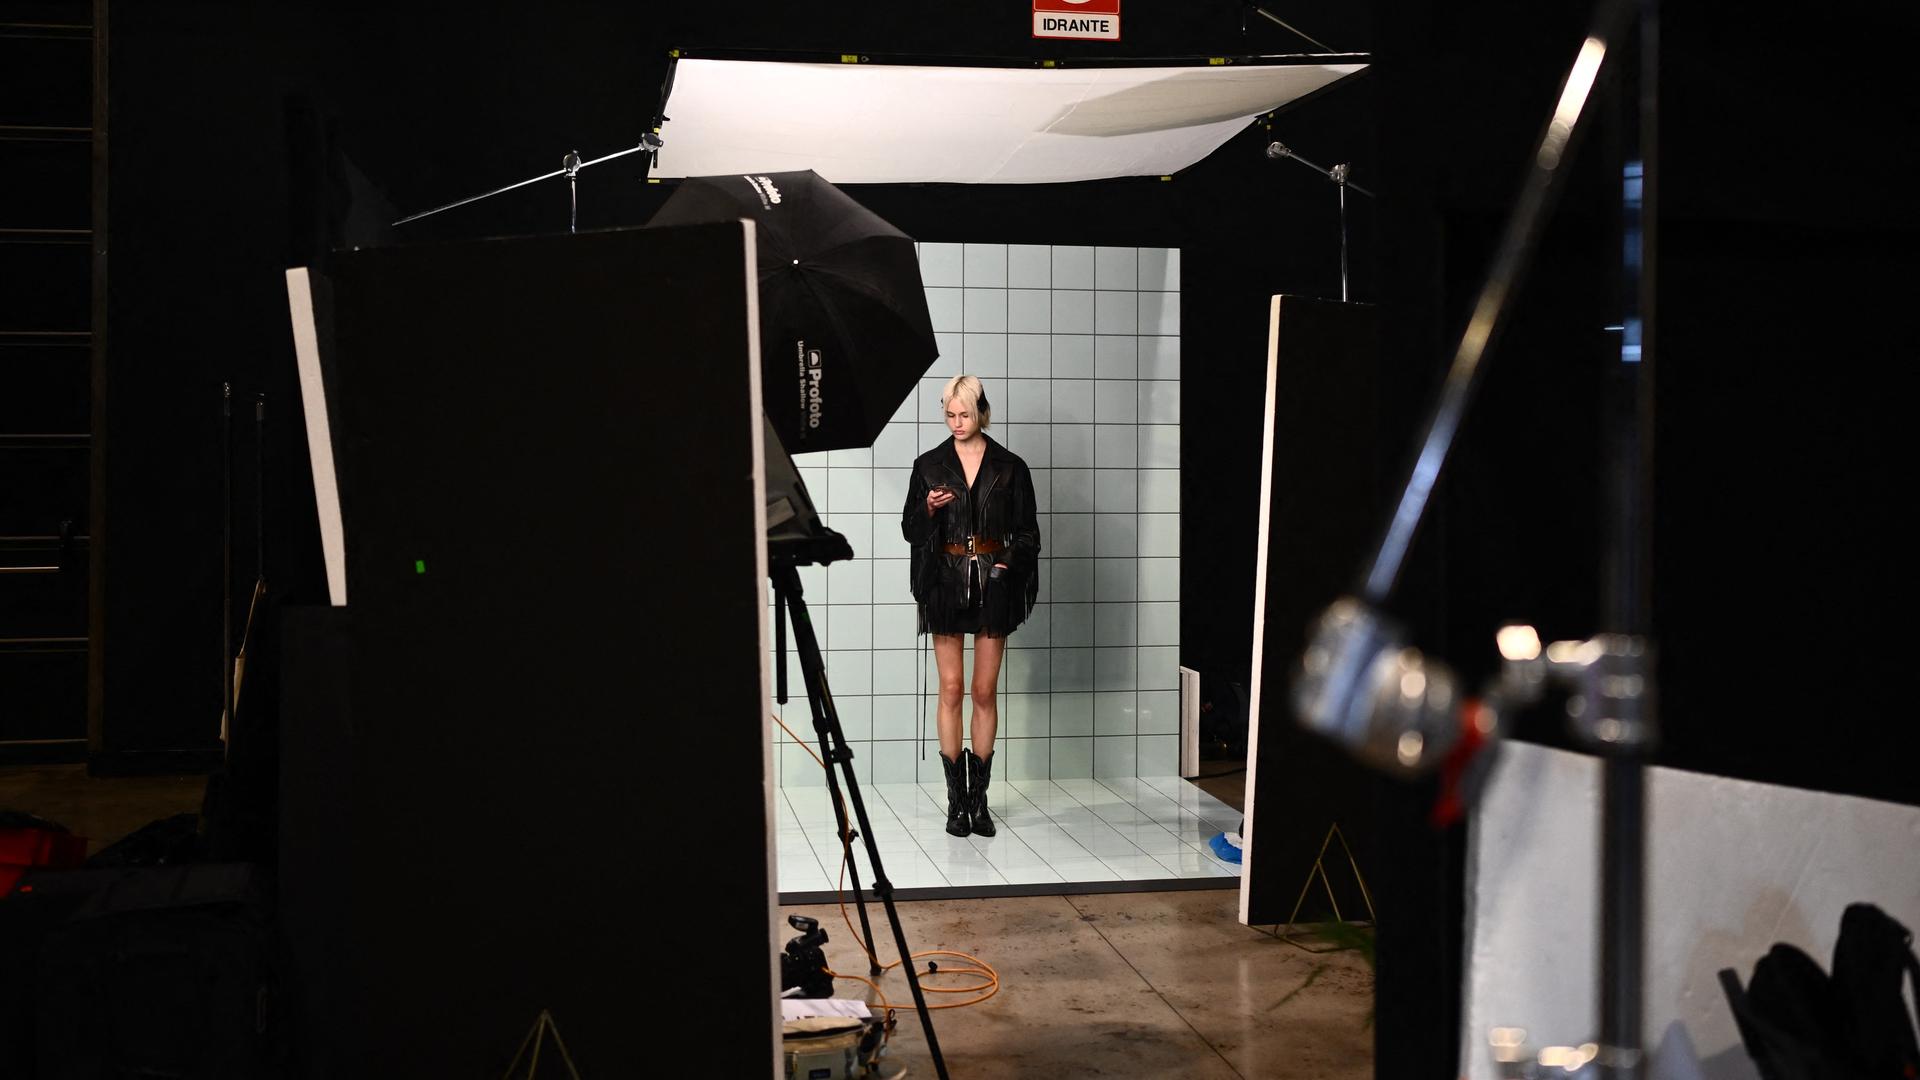 Ein blondes Model steht während einer Modenschau wartend in der Kulisse. Klein im Bild und von Equipment umgeben wirkt sie verloren.